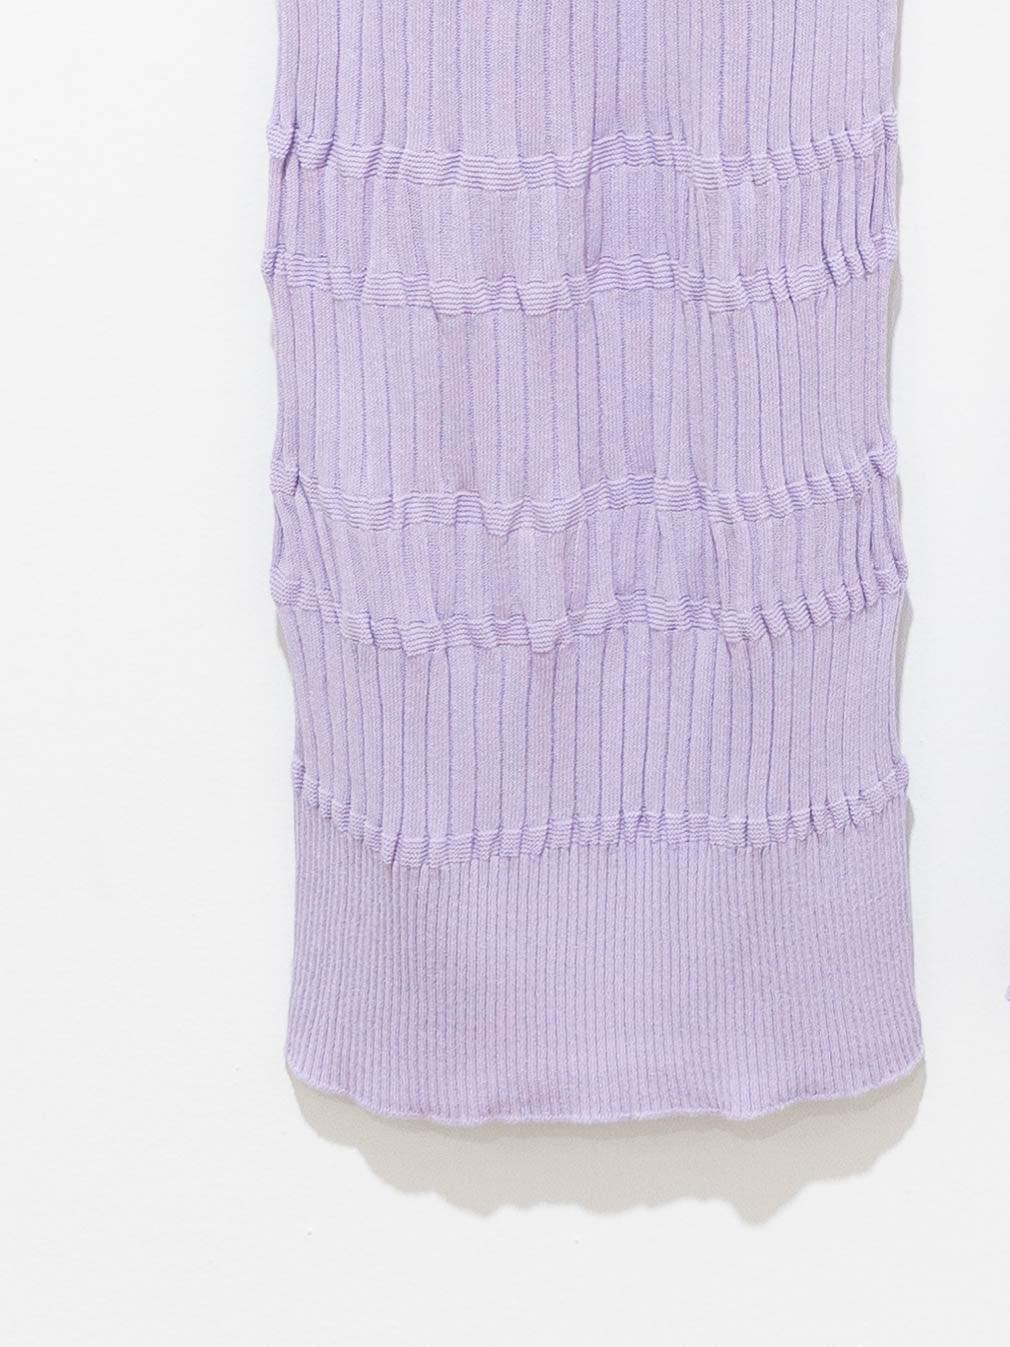 Namu Shop - Unfil High Twist Cotton Ribbed Knit Pants - Lilac